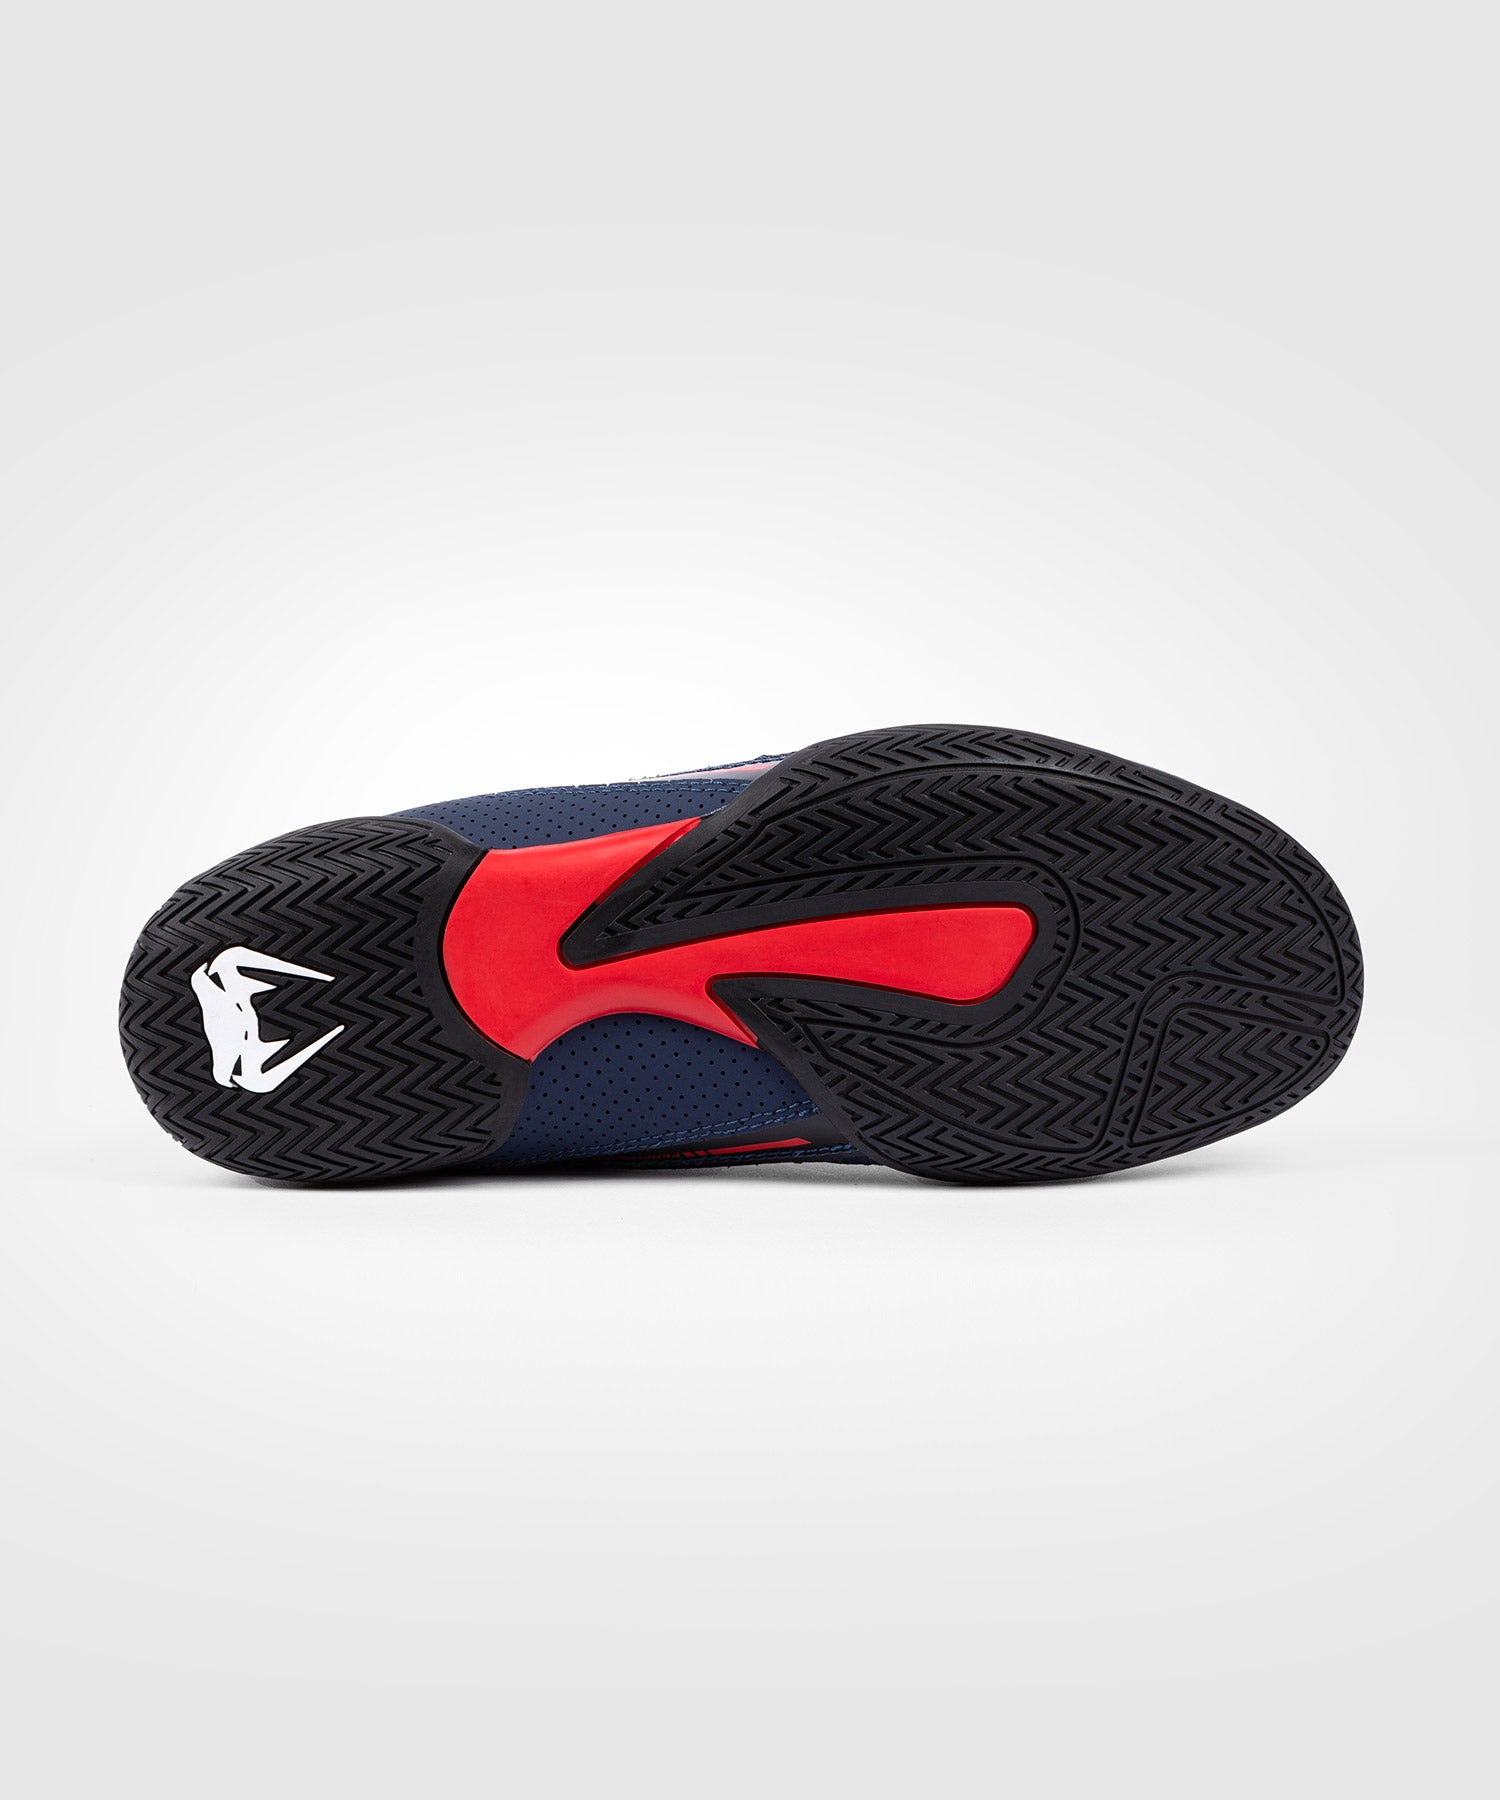 Venum Elite Boxing Shoes - Navy/Black/Red - Venum Asia